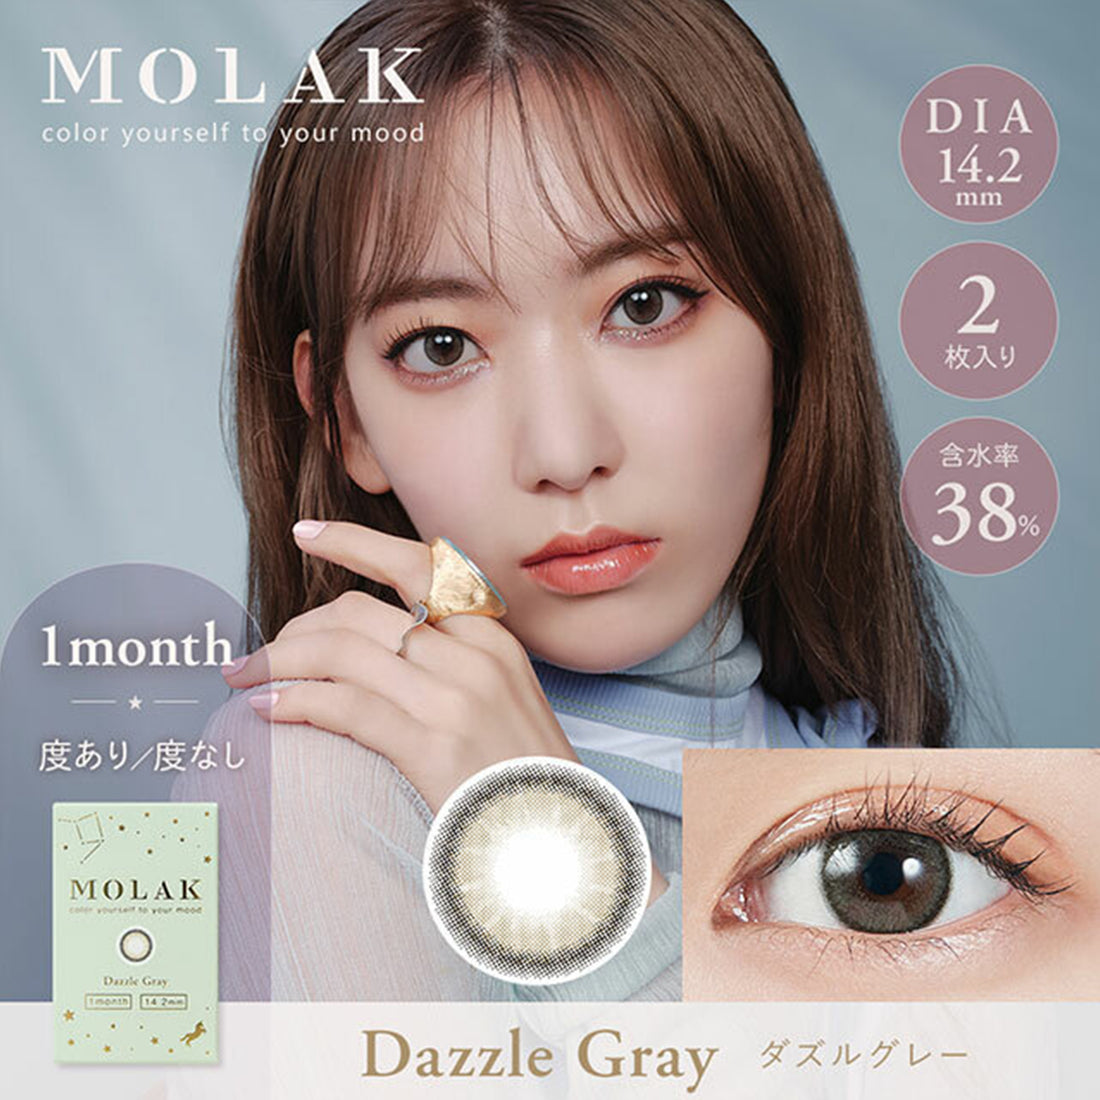 MOLAK 1 Month Color Lens-Dazzle Gray 2lenses